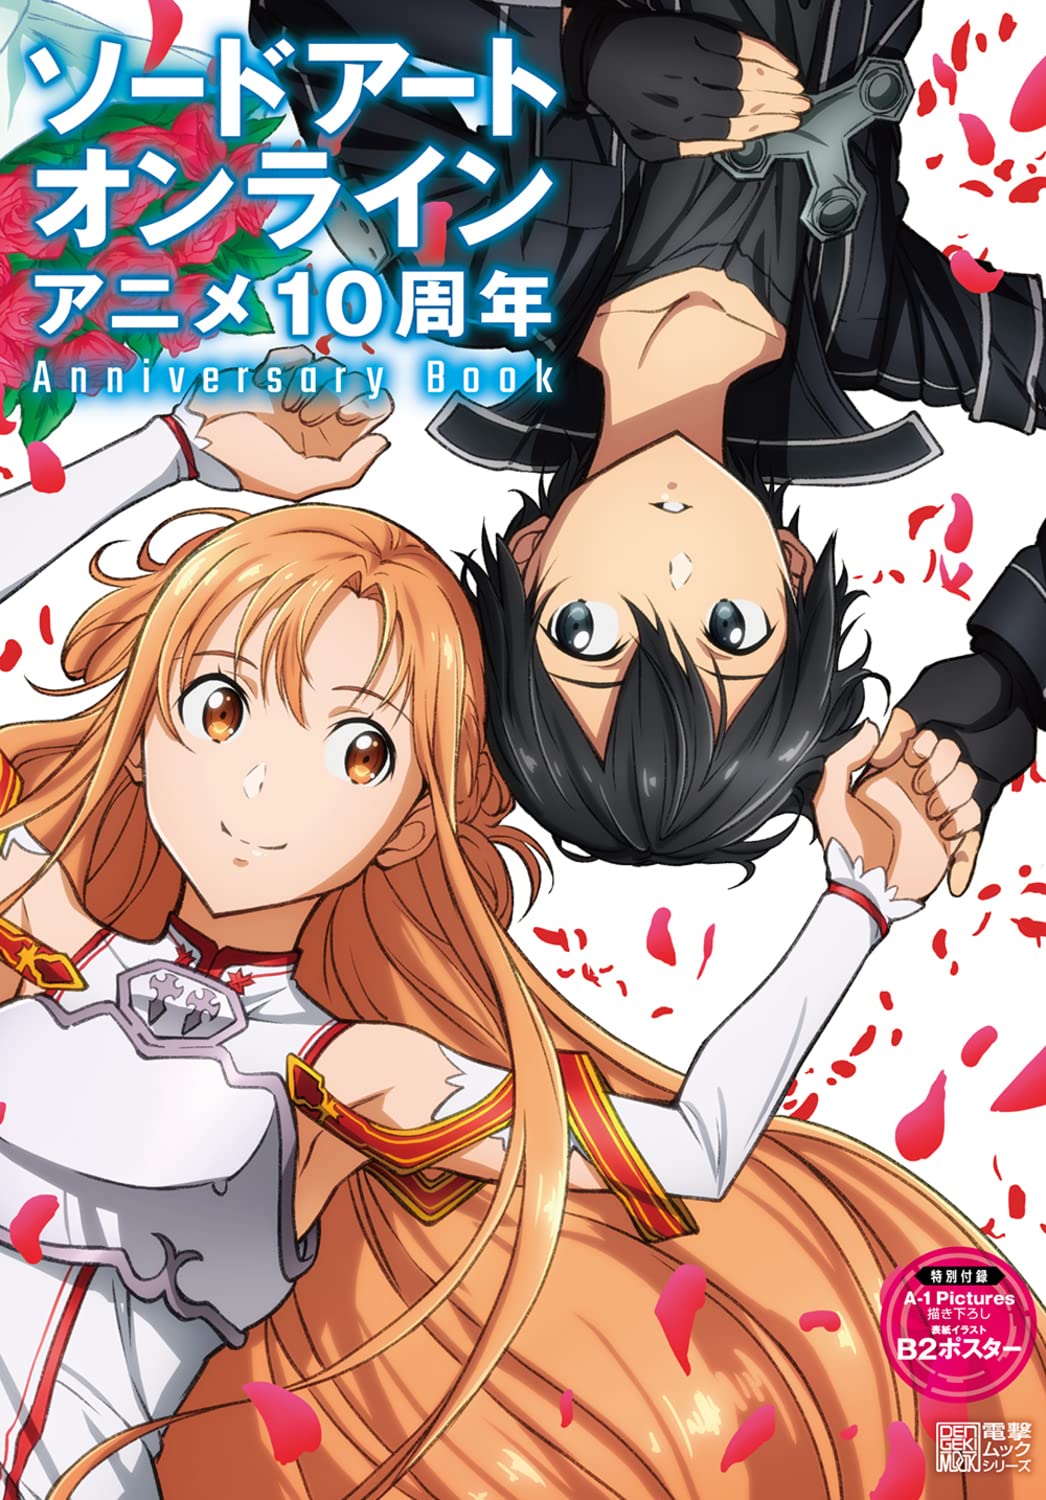 Pin by FORT AL on manga Ⅱ  Anime demon, Slayer anime, Anime images